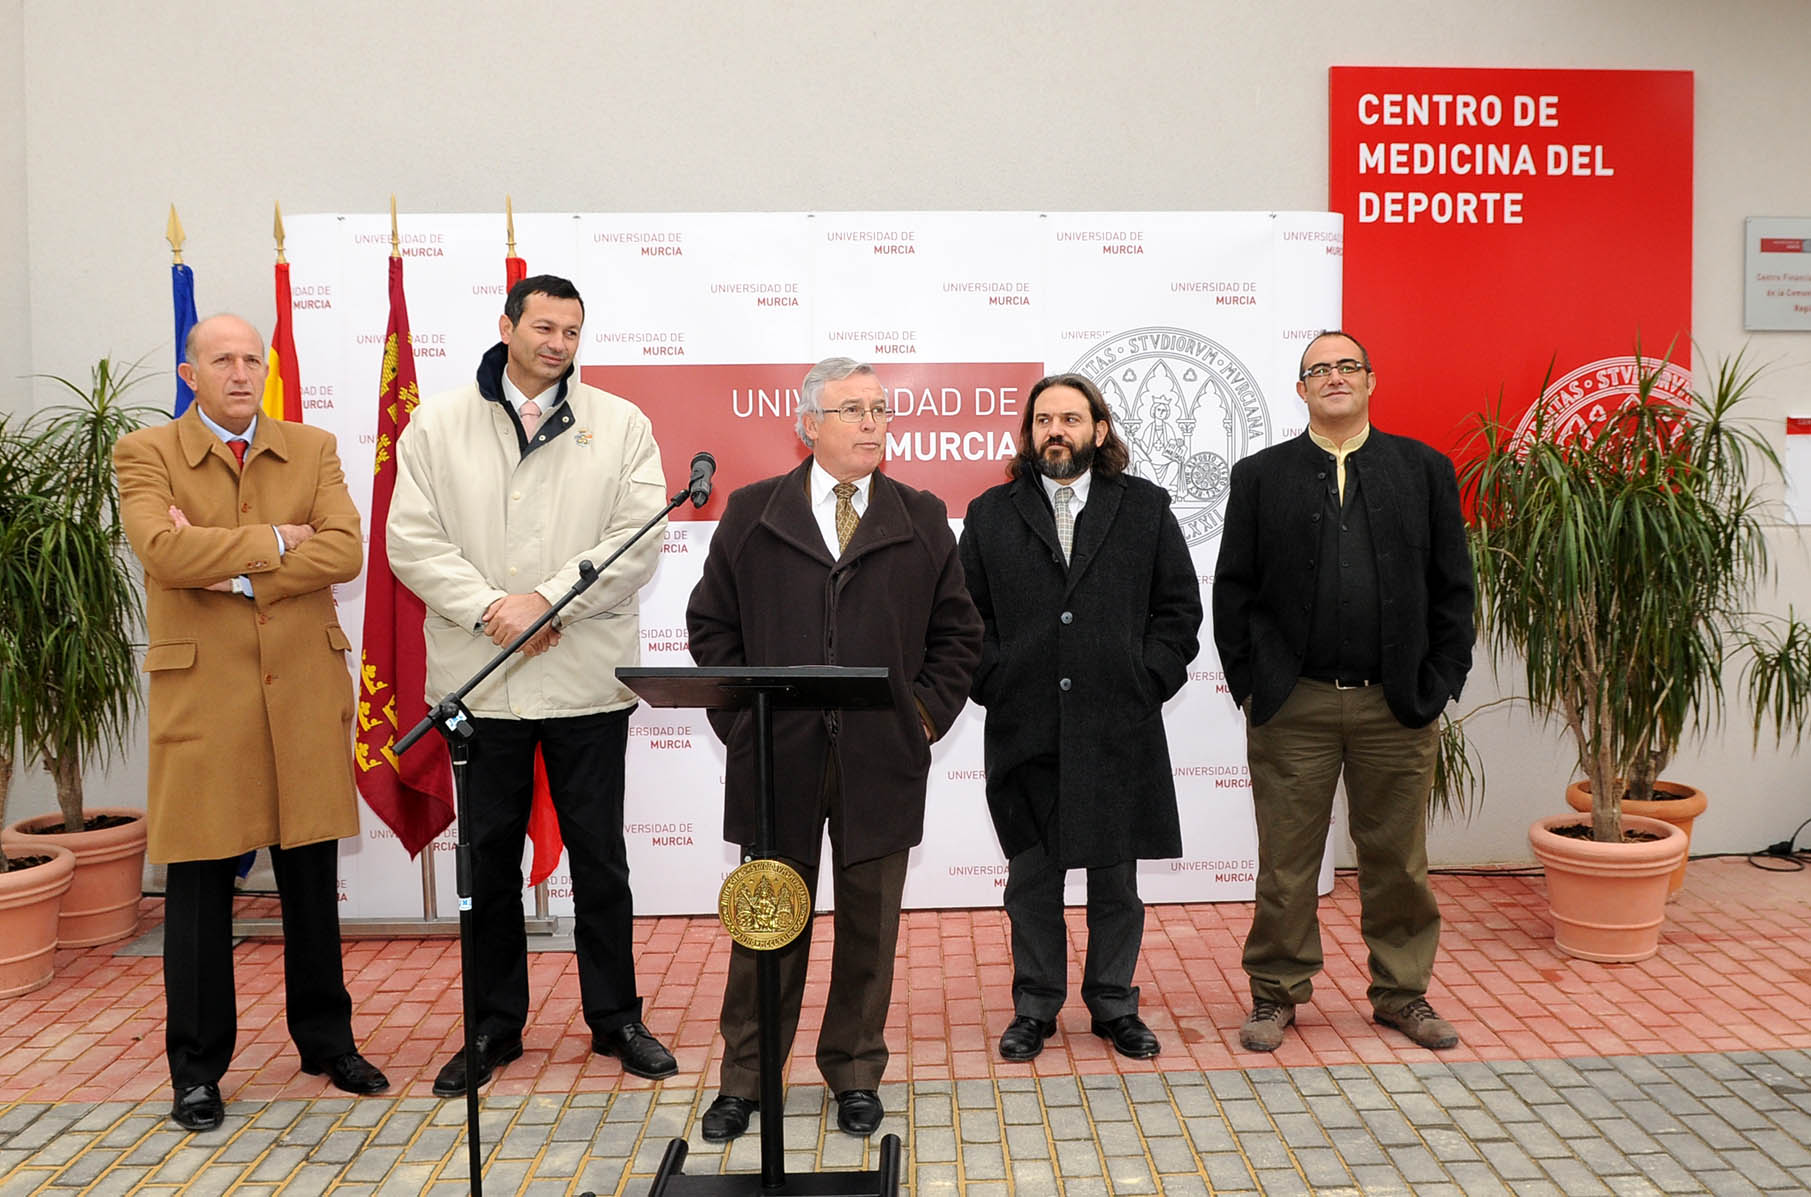 Rector de la Universidad de Murcia junto al resto de autoridades en el discurso inaugural del centro.